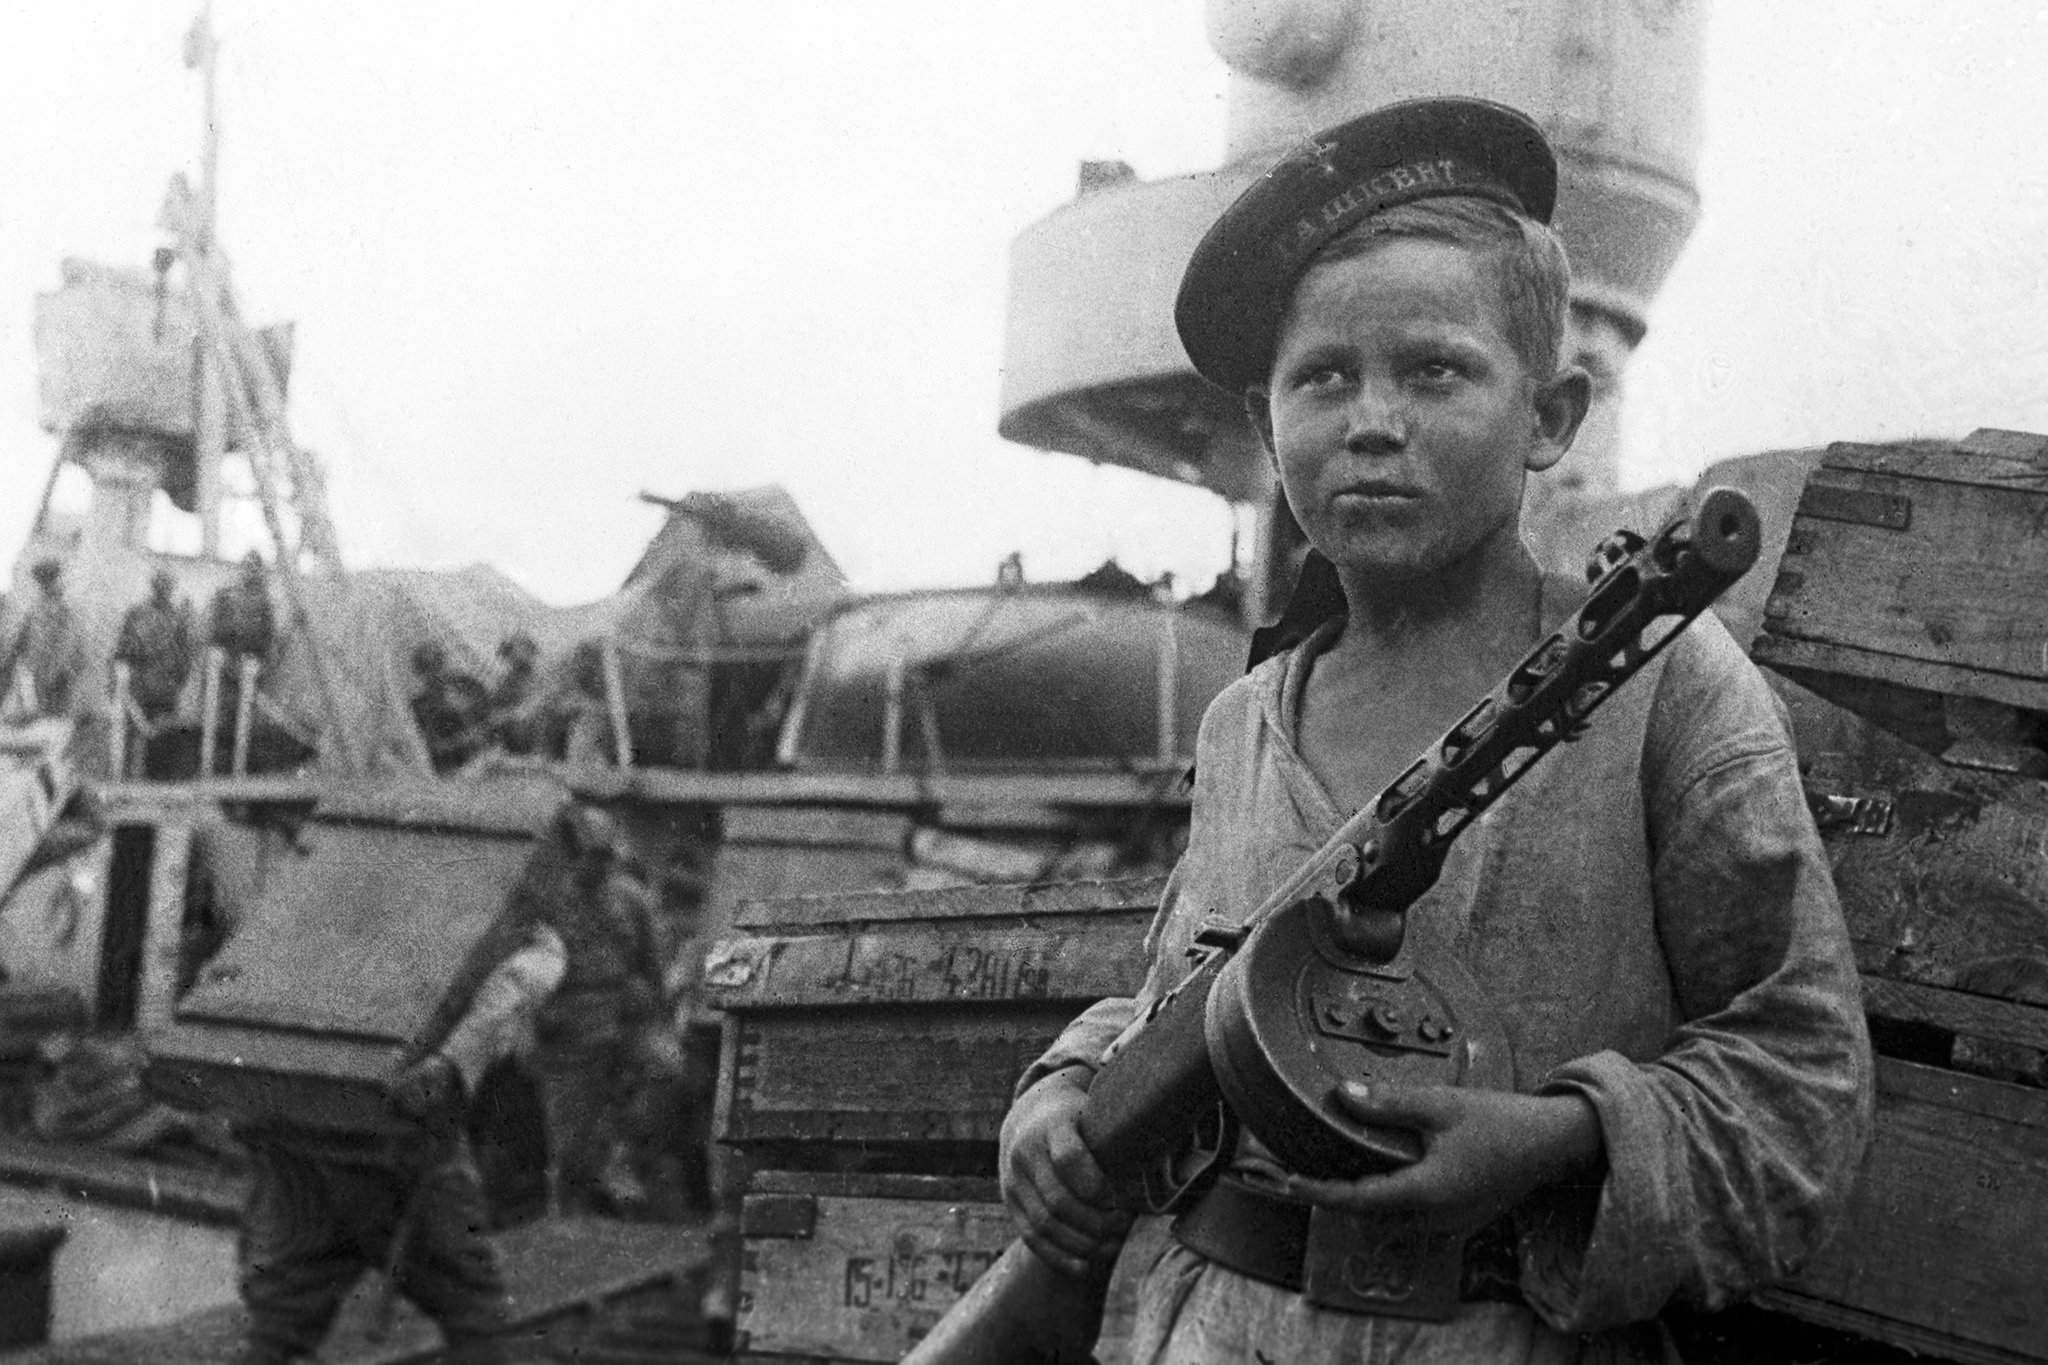 Фото герои войны 1945 дети войны